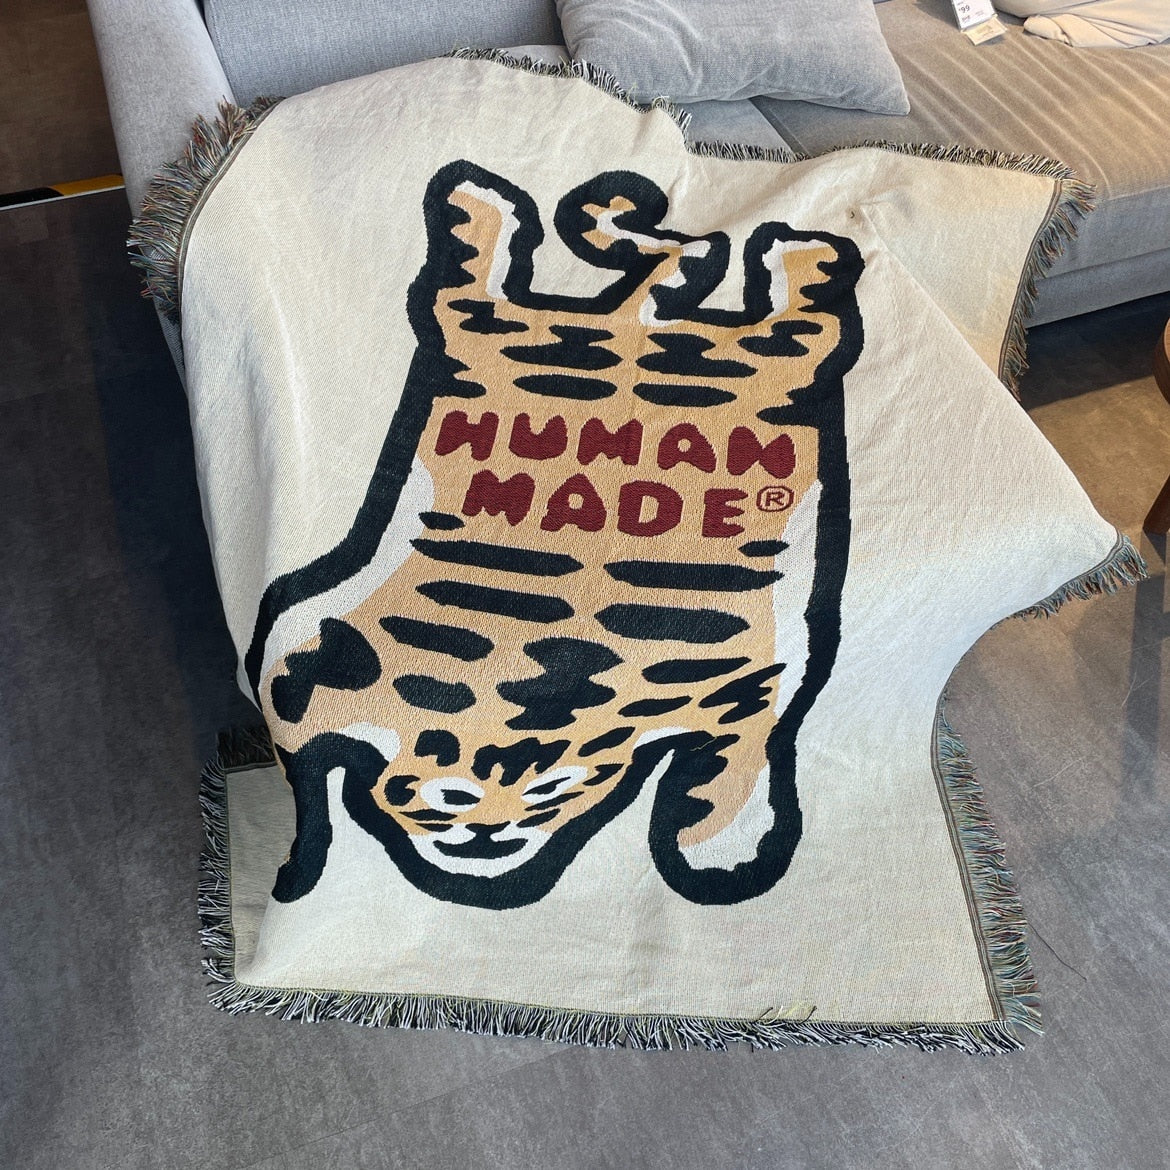 代引き手数料無料 human made made rug ラグ large ヒューマンメイド ...